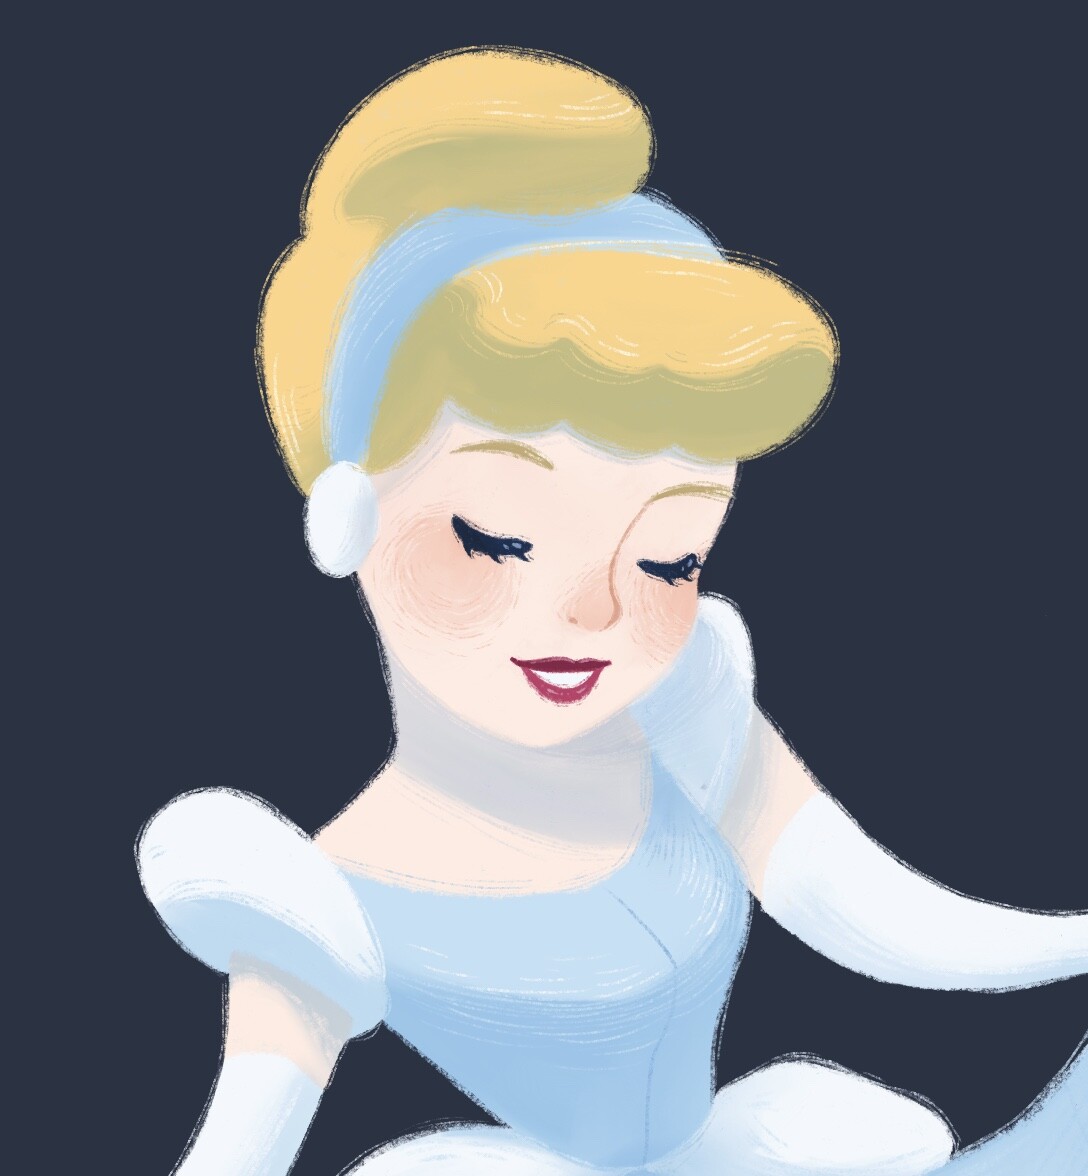 ArtStation - Disney Princess:Cinderella